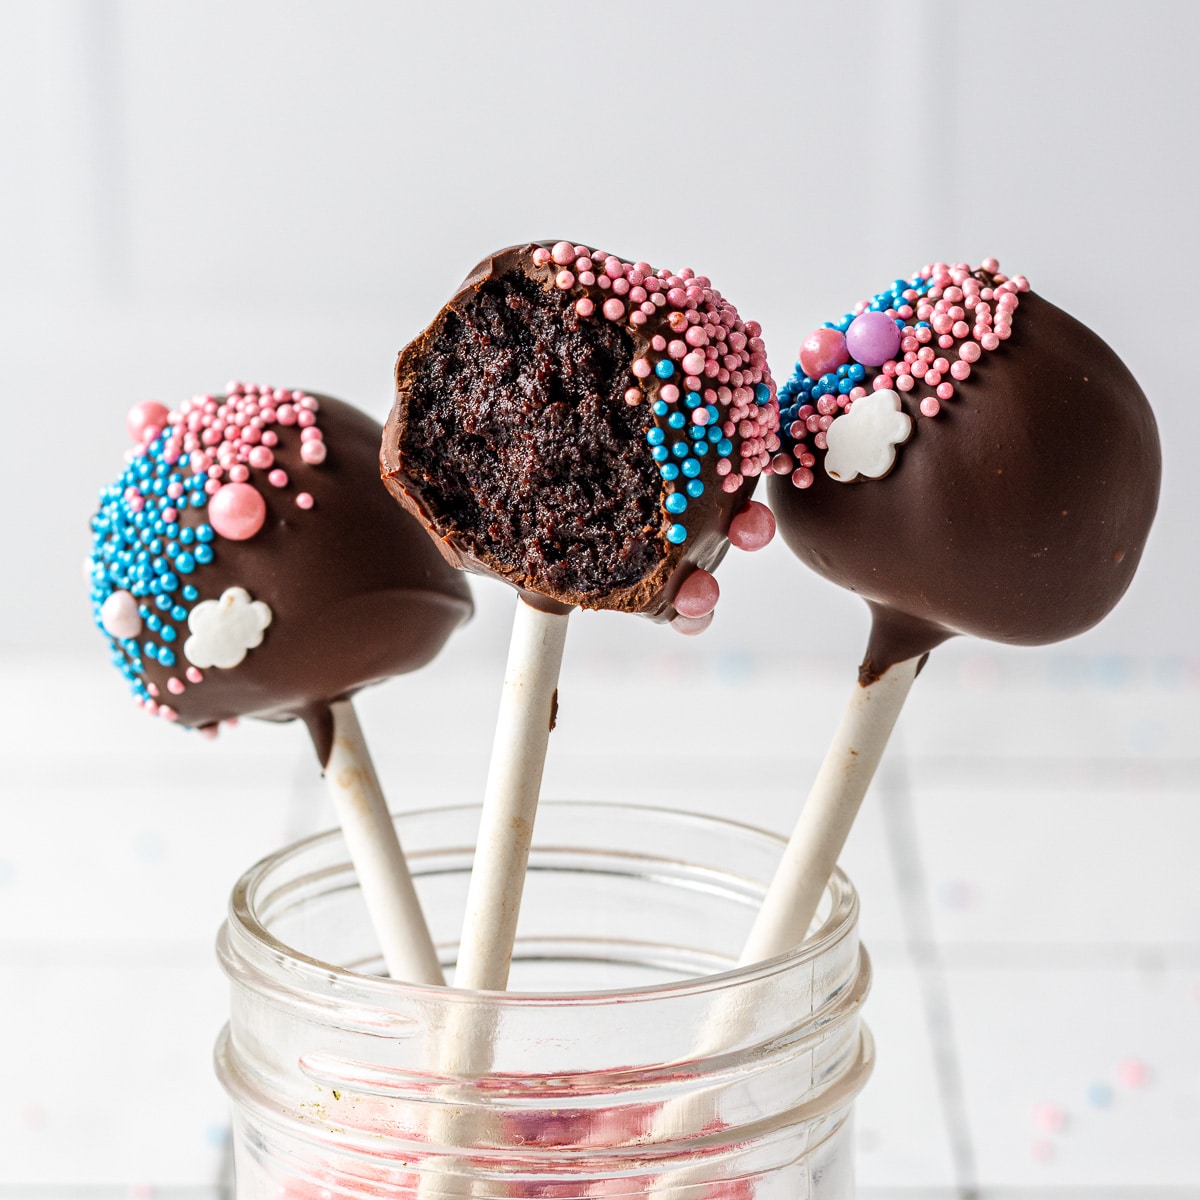 Sjah Vrouw aankomen Chocolate Cake Pops (2 Ways!) - Cookie Dough Diaries